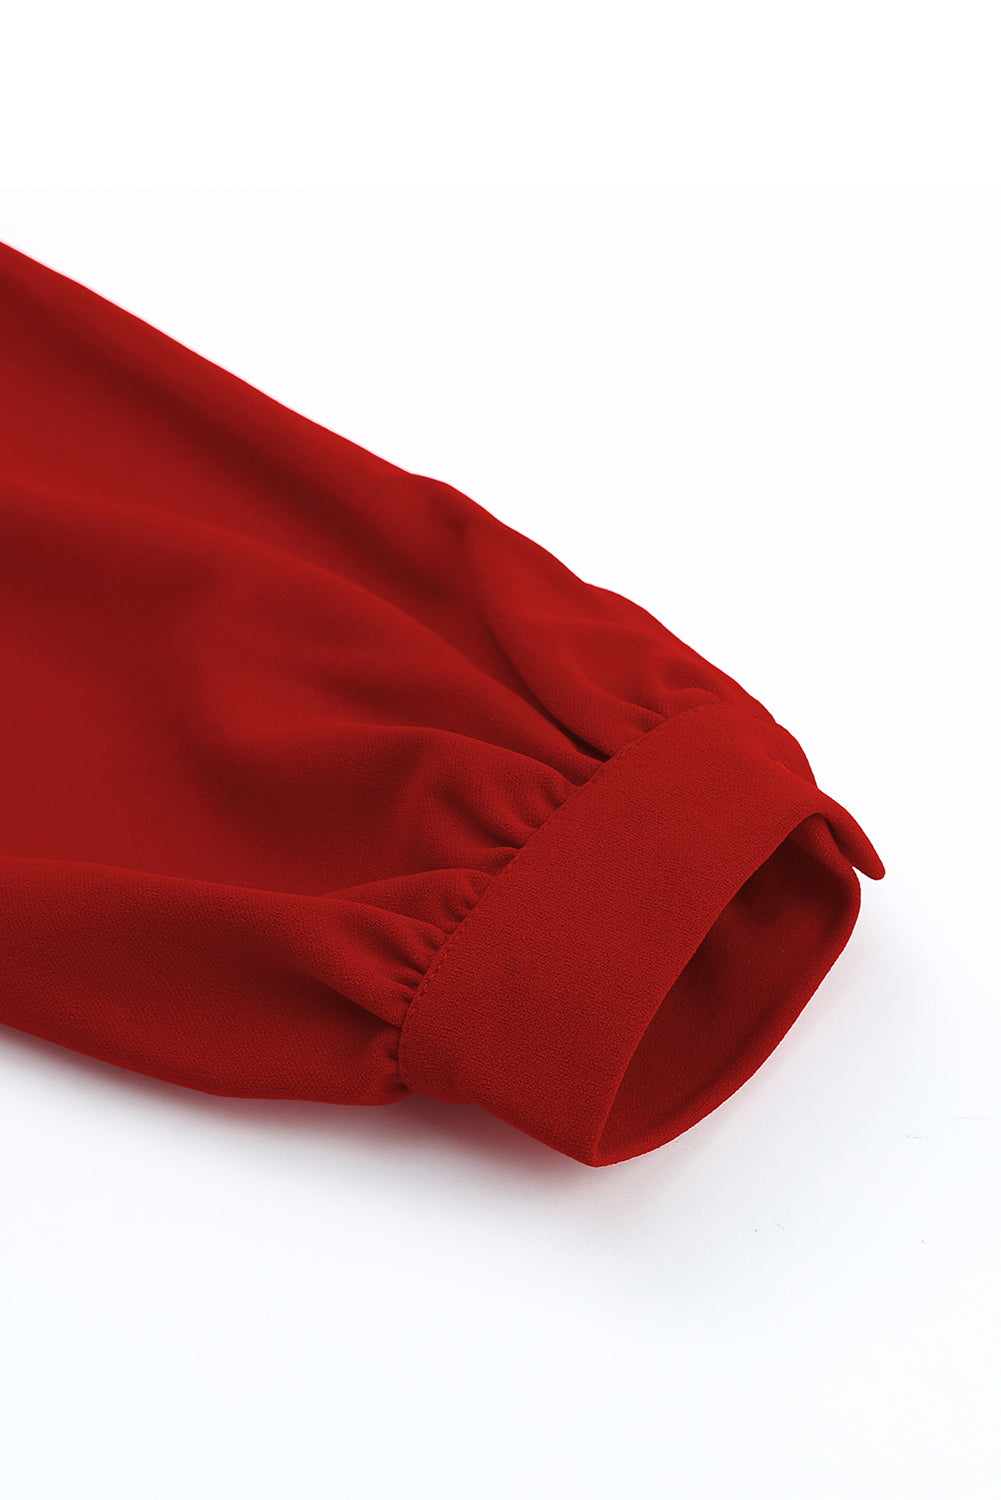 Fiery Red One Shoulder Puff Sleeve Split Midi Dress